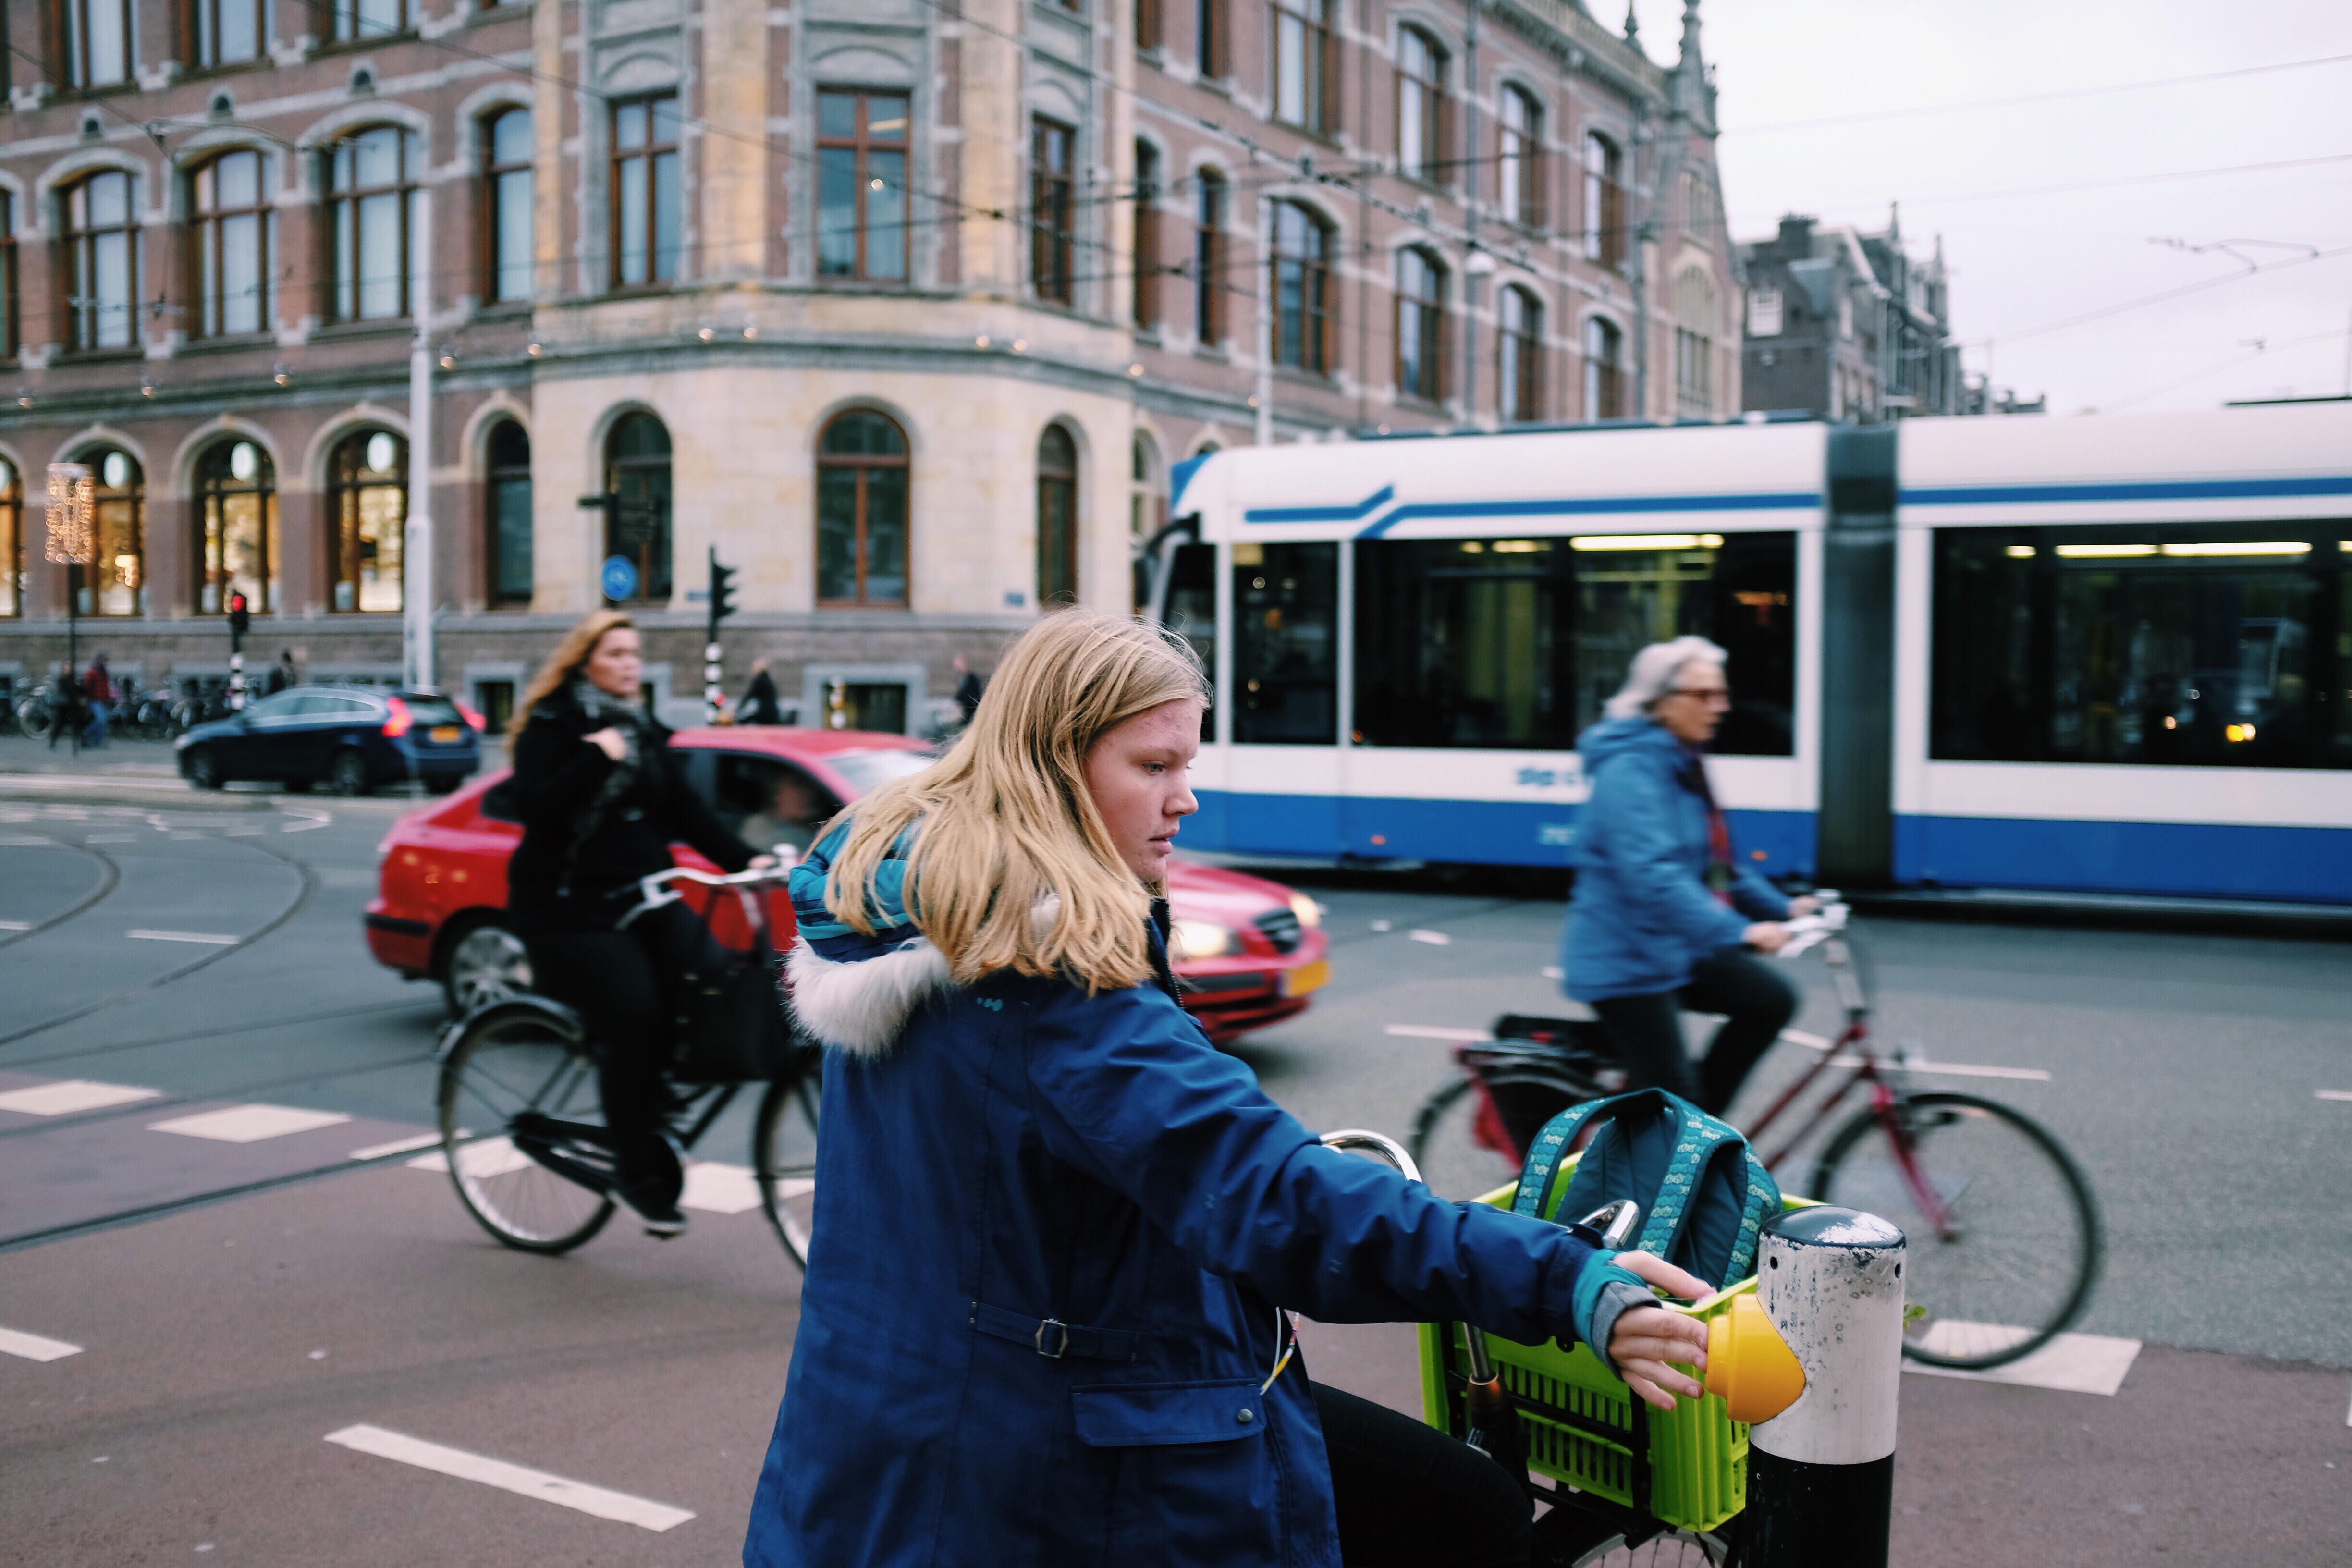 drie fietsers in de stad met een auto en tram op de achtergrond